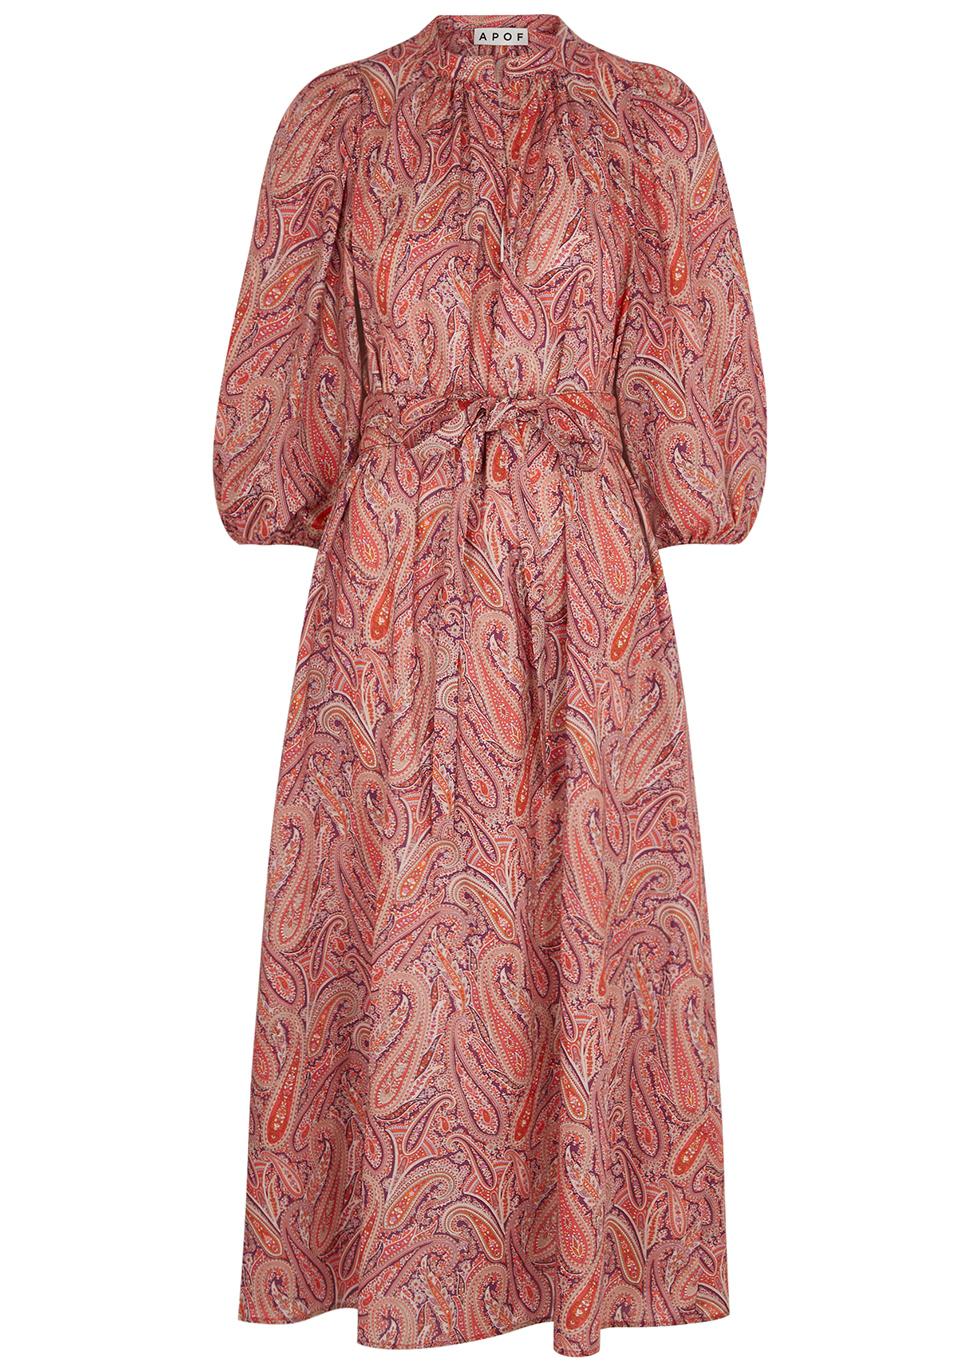 Maya paisley-print cotton midi dress by APOF